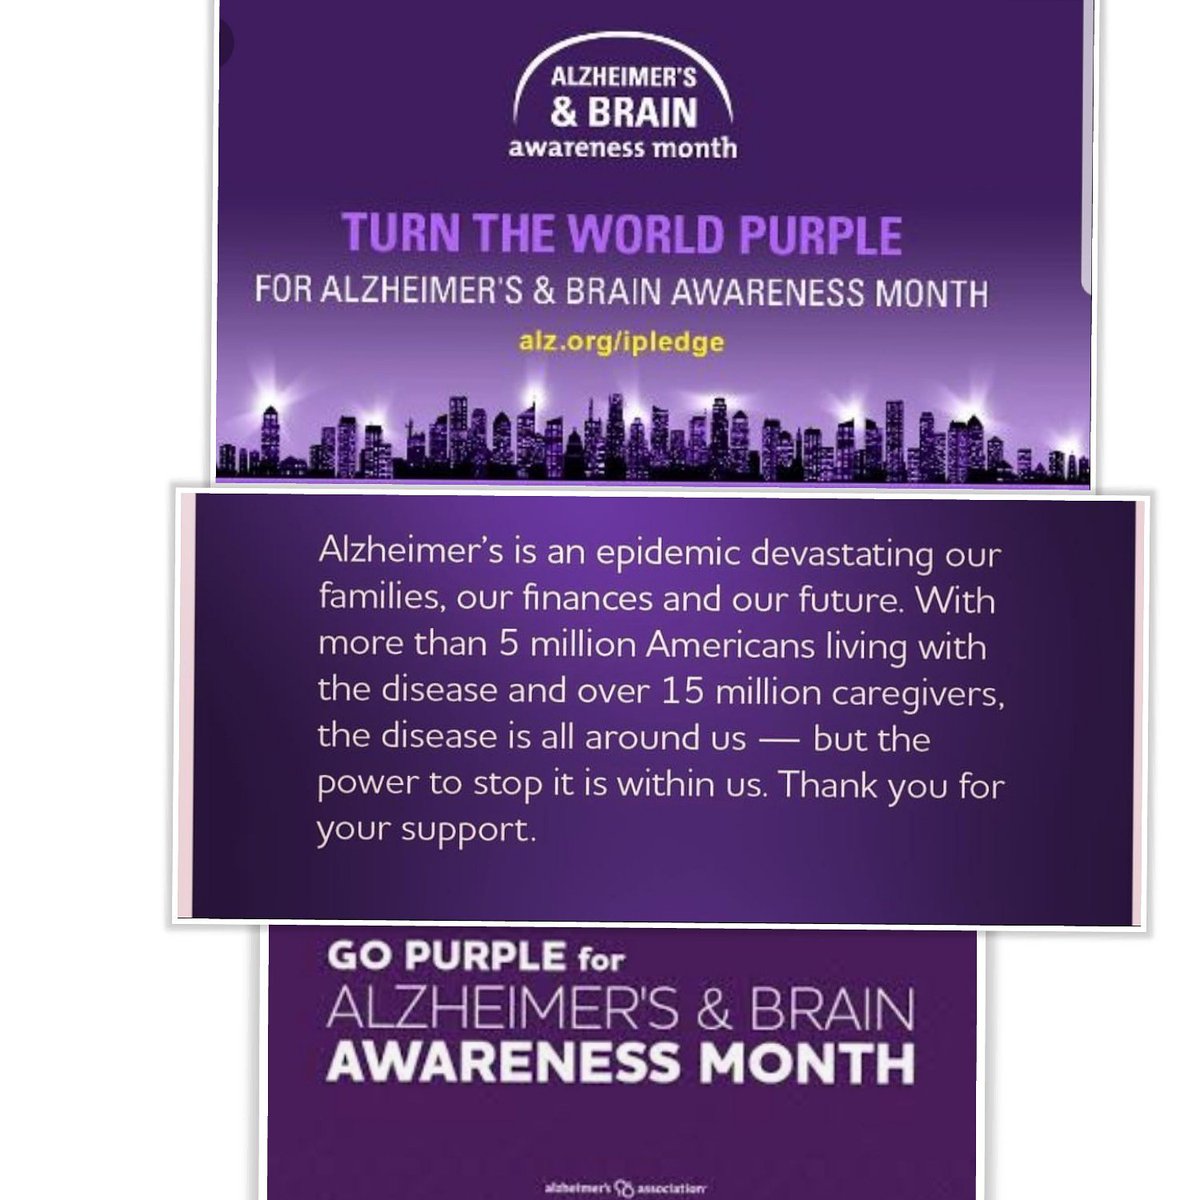 The month of June is Alzheimer's & Brain Awareness month.  Turn the world purple because #AlzheimersAwareness & #BrainHealthAwareness matter! #MemoriesMatter